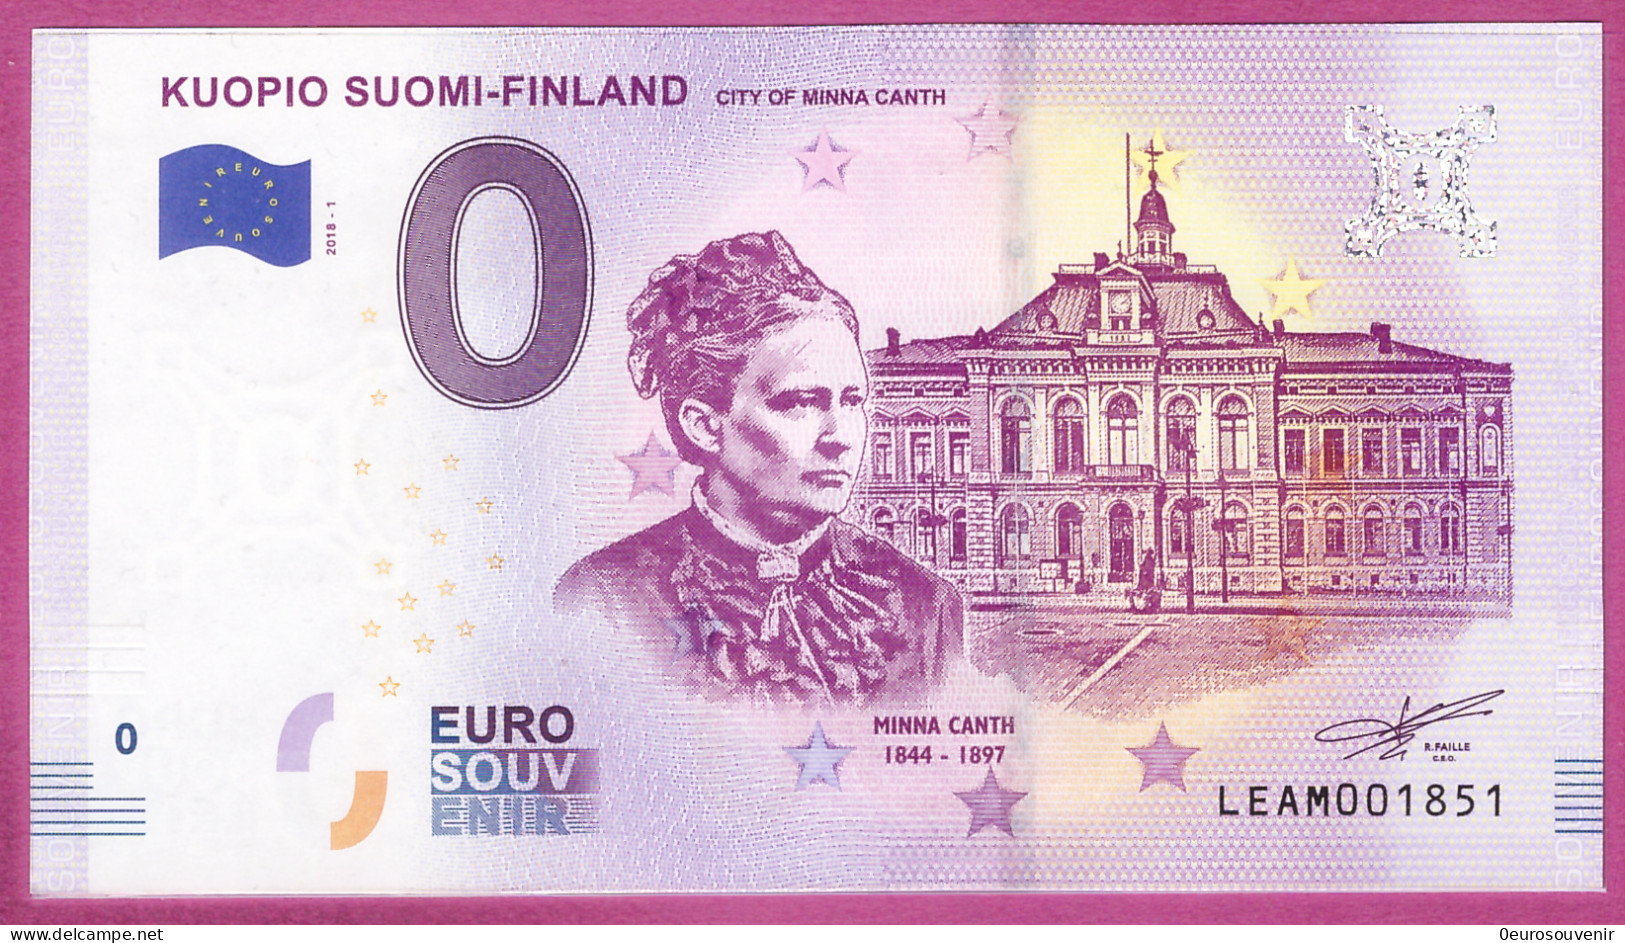 0-Euro LEAM 2018-1 KUOPIO SUOMI - FINLAND - CITY OF MINNA CANTH - Privatentwürfe